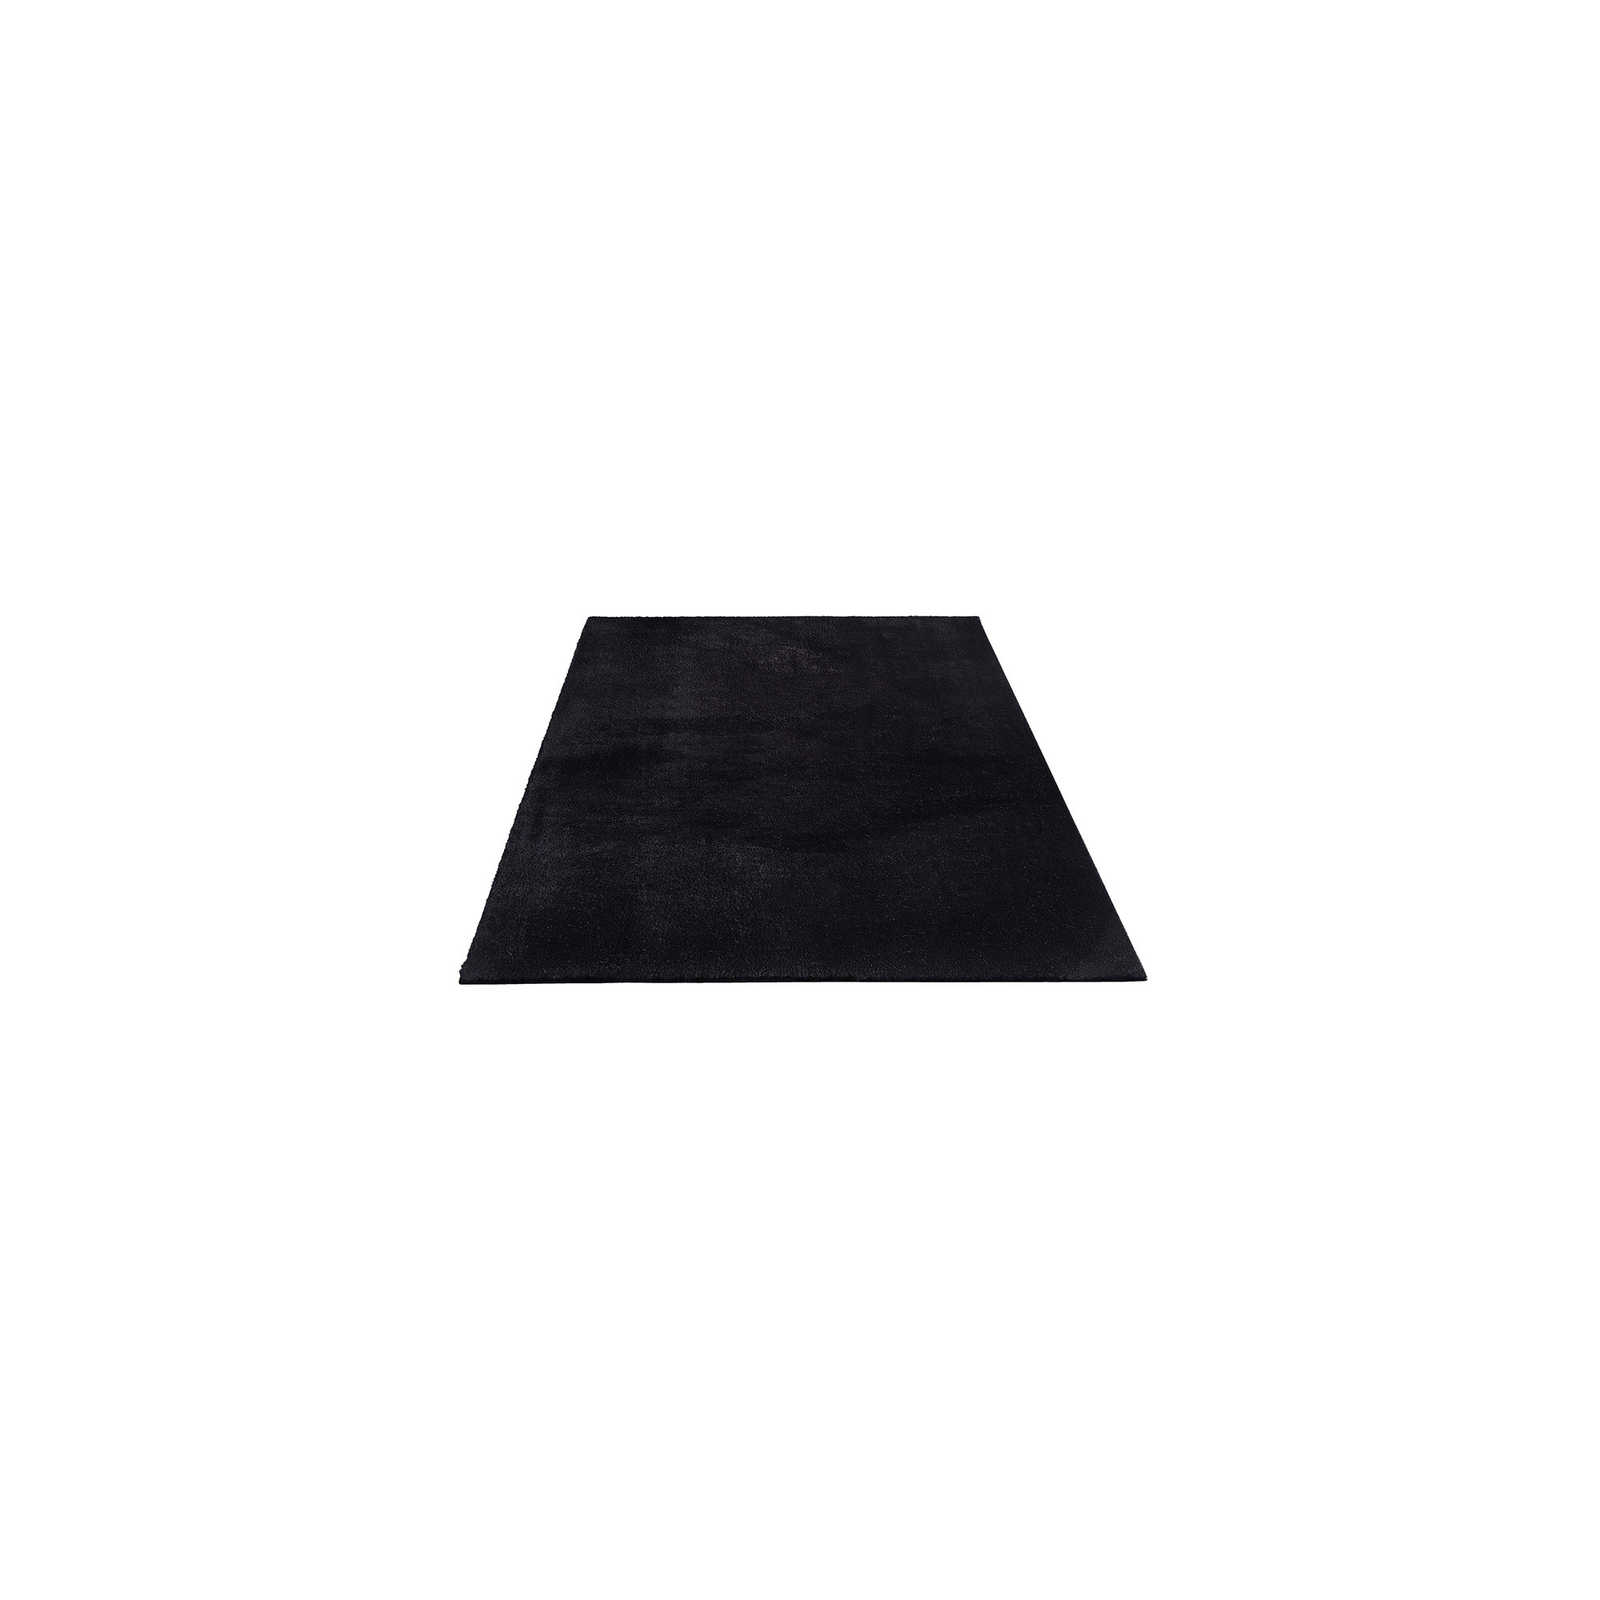 Fluweelzacht hoogpolig tapijt in zwart - 150 x 80 cm
